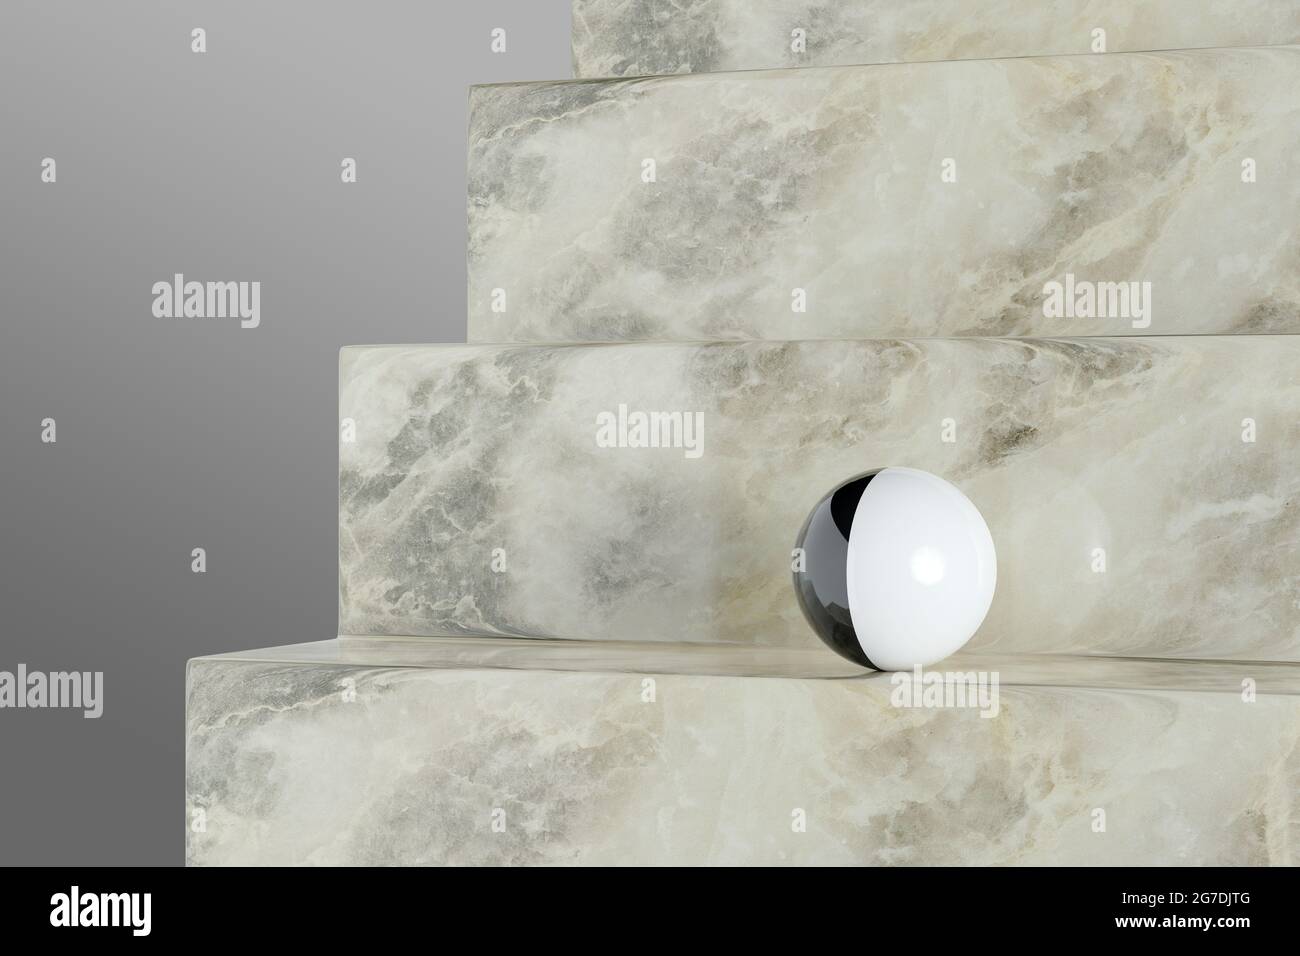 Boule noire et blanche sur un escalier en marbre. illustration 3d. Banque D'Images